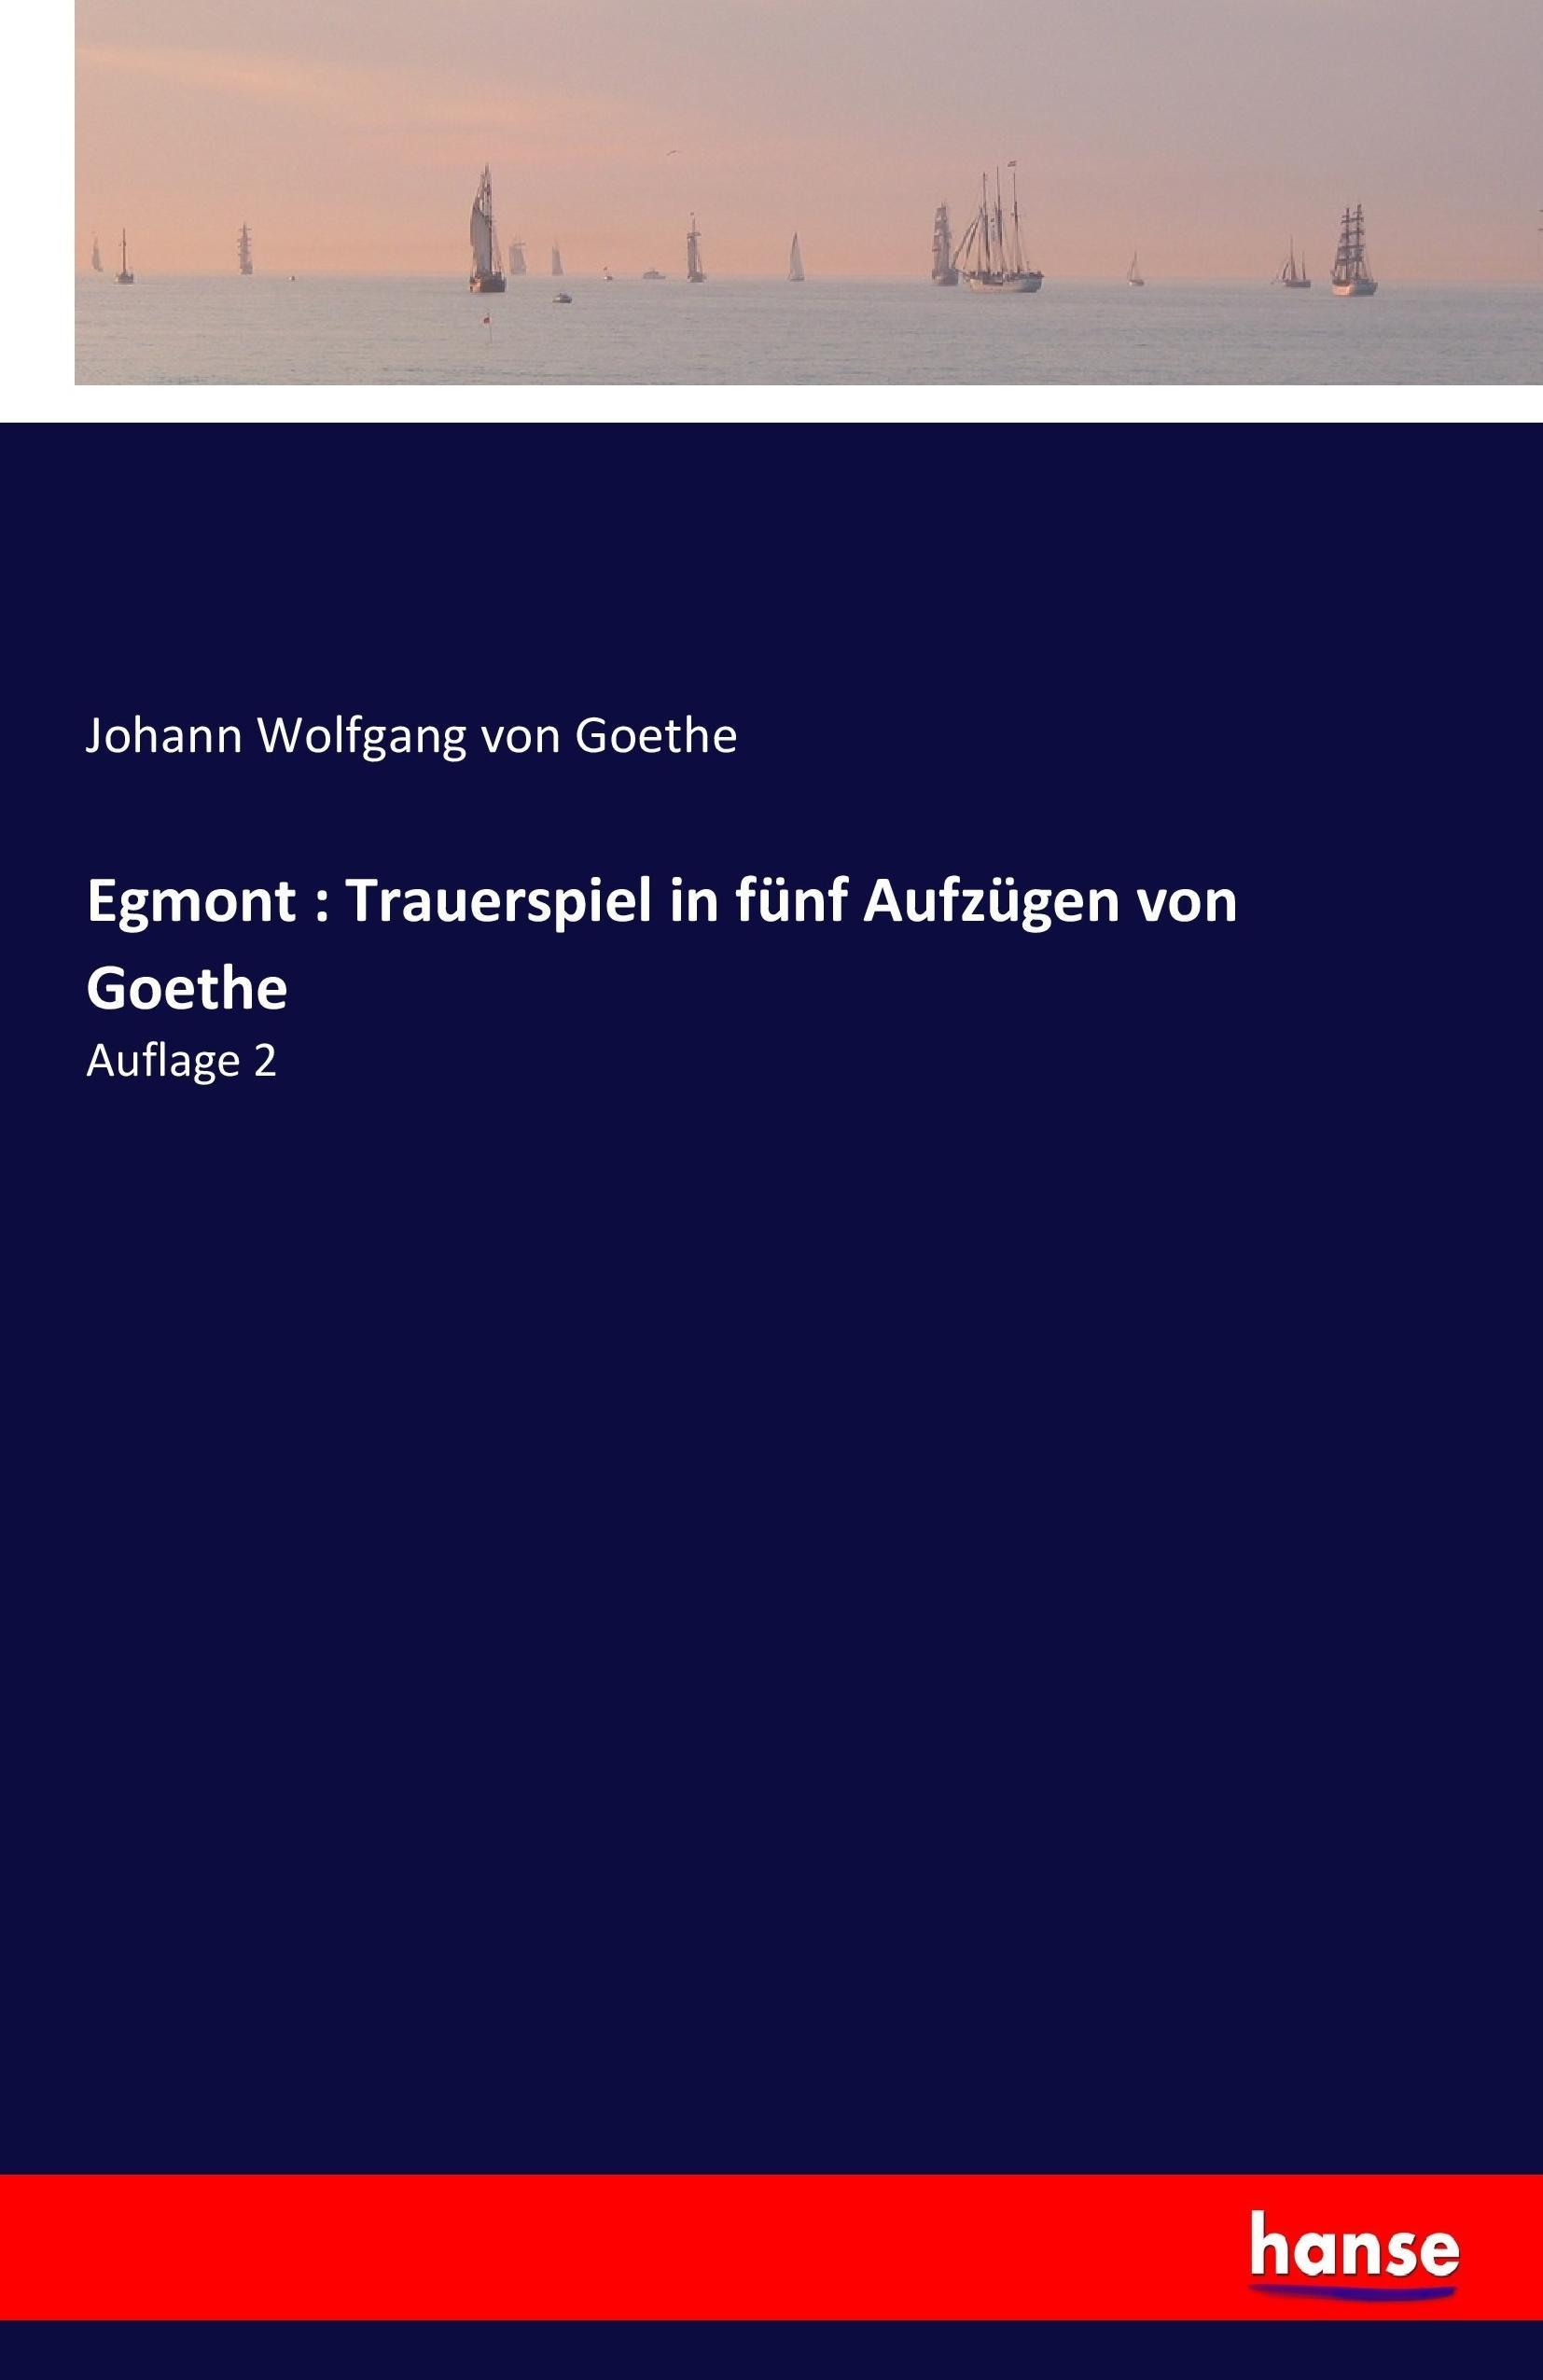 Egmont : Trauerspiel in fuenf Aufzuegen von Goethe - Goethe, Johann Wolfgang von